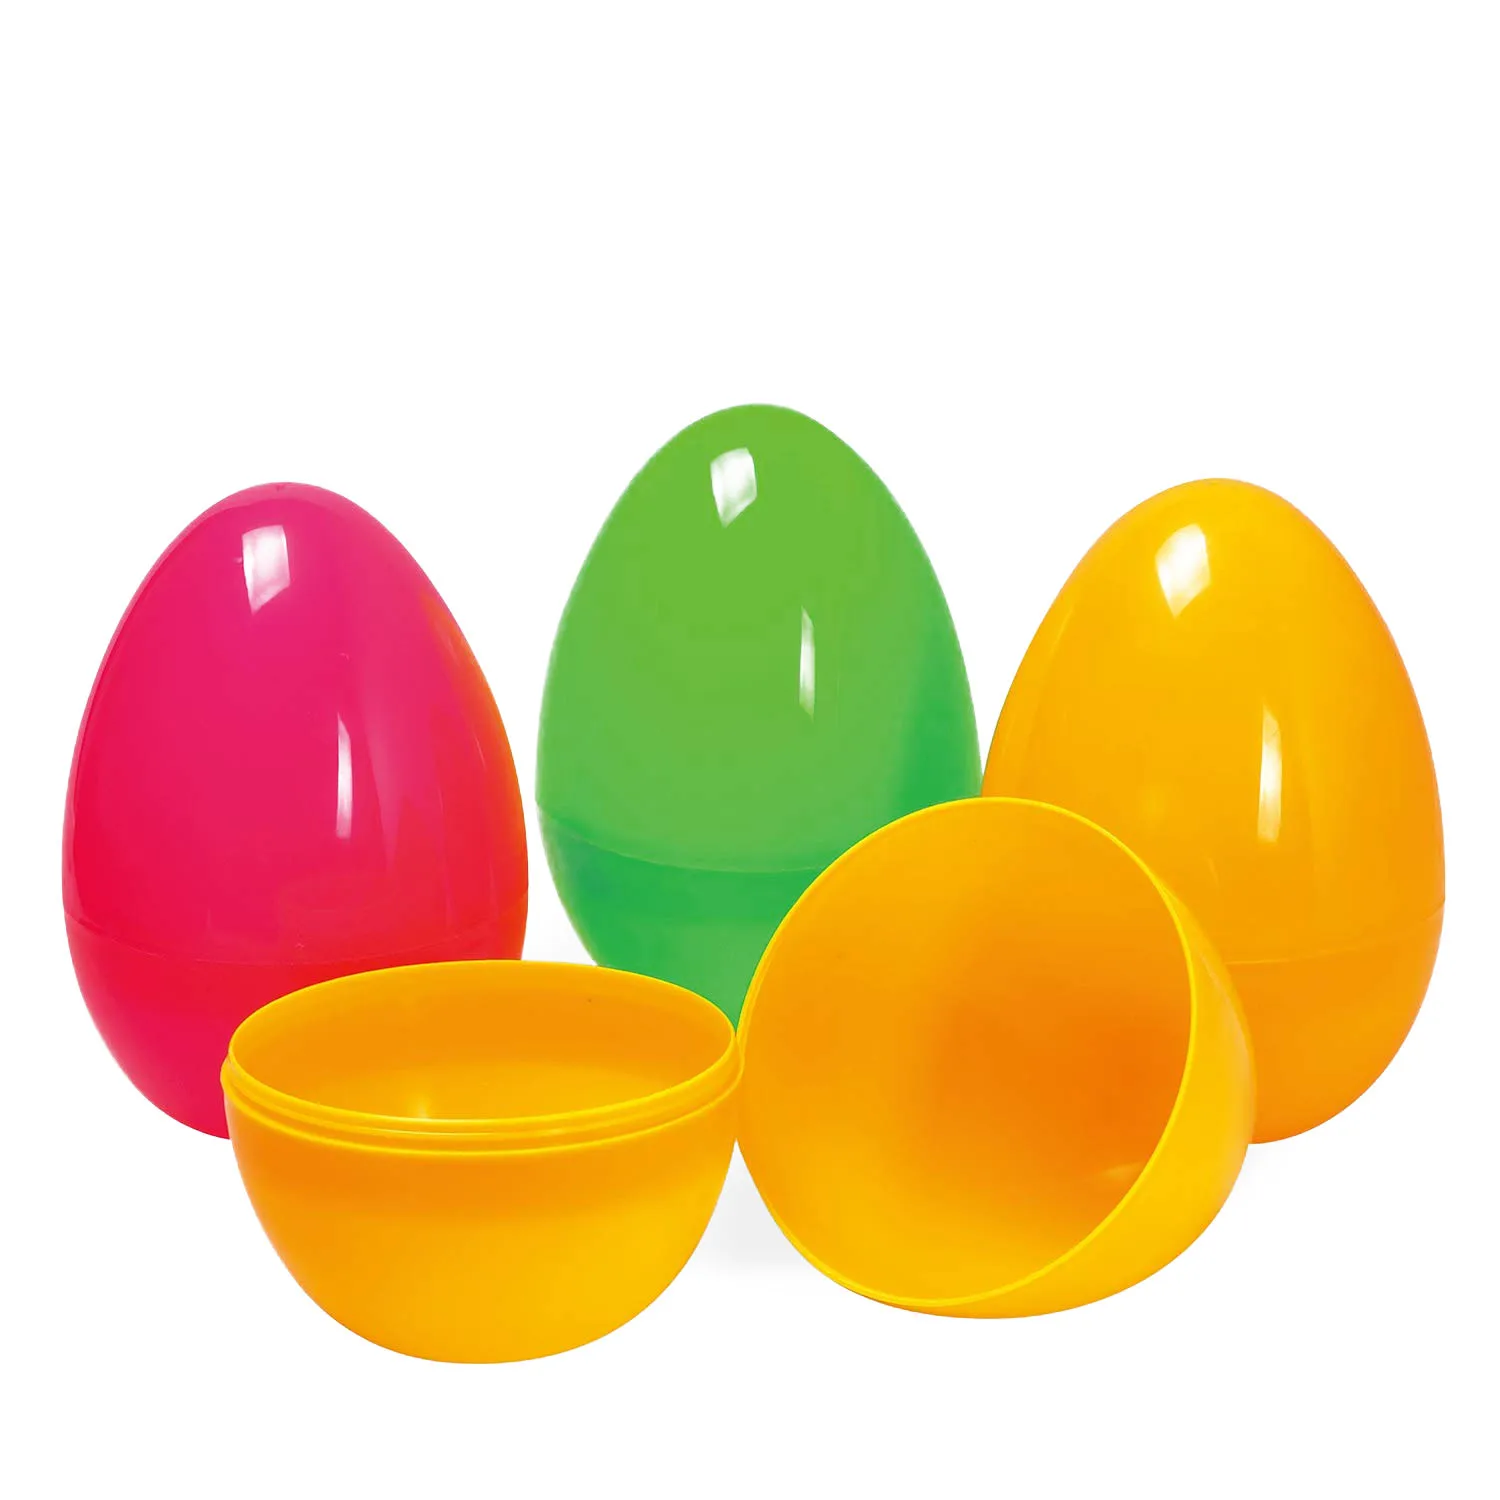 Пластиковые яйца купить. Пластиковые яйца. Пасхальные яйца пластмассовые. Пластиковые яйца с игрушкой. Игрушечное пластмассовое яйцо.